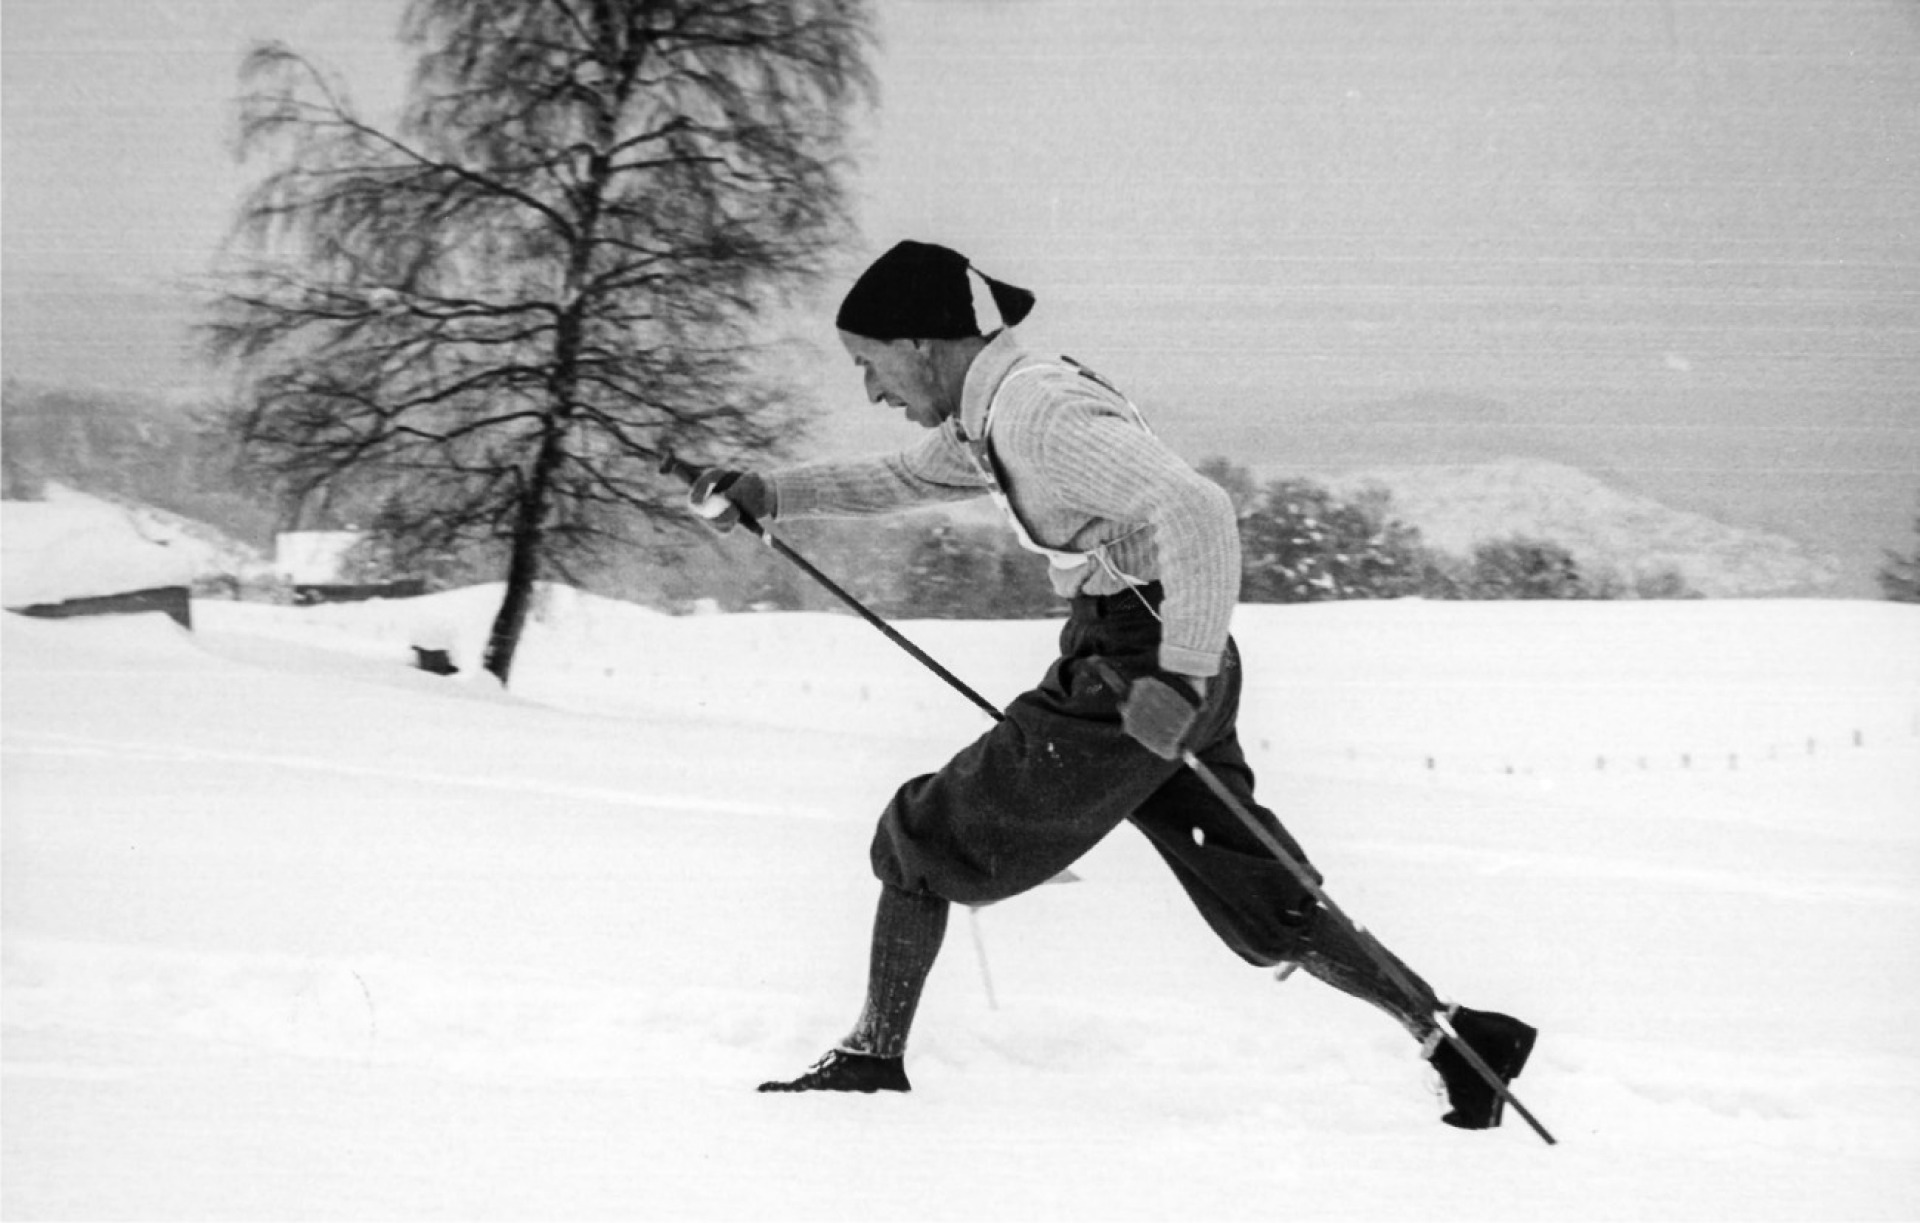 Langlaufpionier und Gründungsmitglied Ernst Zurbrügg hinterliess seine Spuren nicht nur im Schnee – auch das Vereinsleben prägte er lange Zeit mit. BILD: ZVG